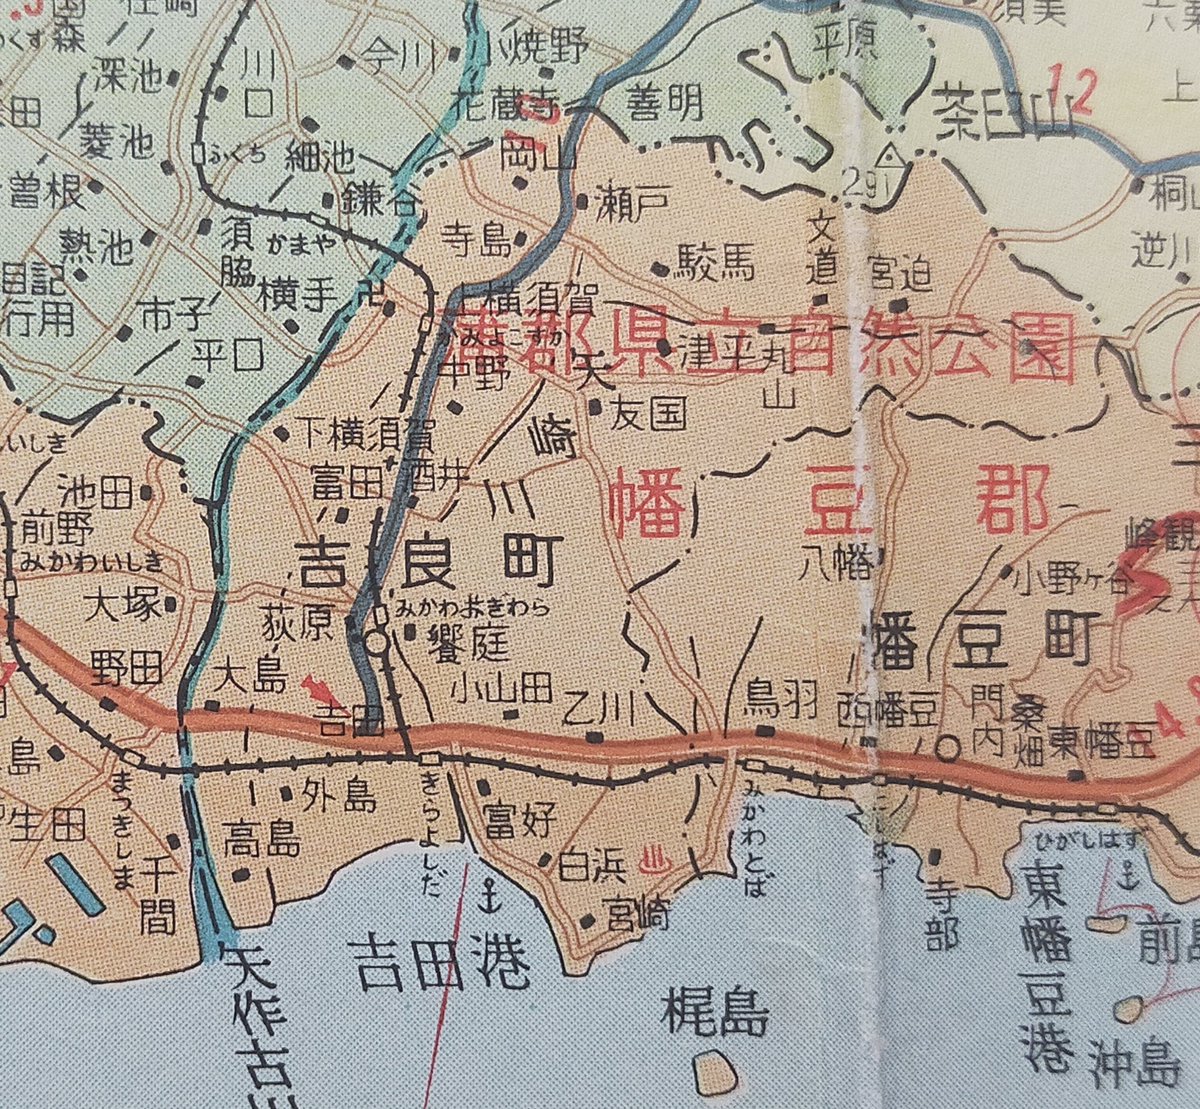 12月14日(15日未明)といえば赤穂浪士討ち入り。というわけで、幡豆郡吉良町の地図を。昭和46年。 